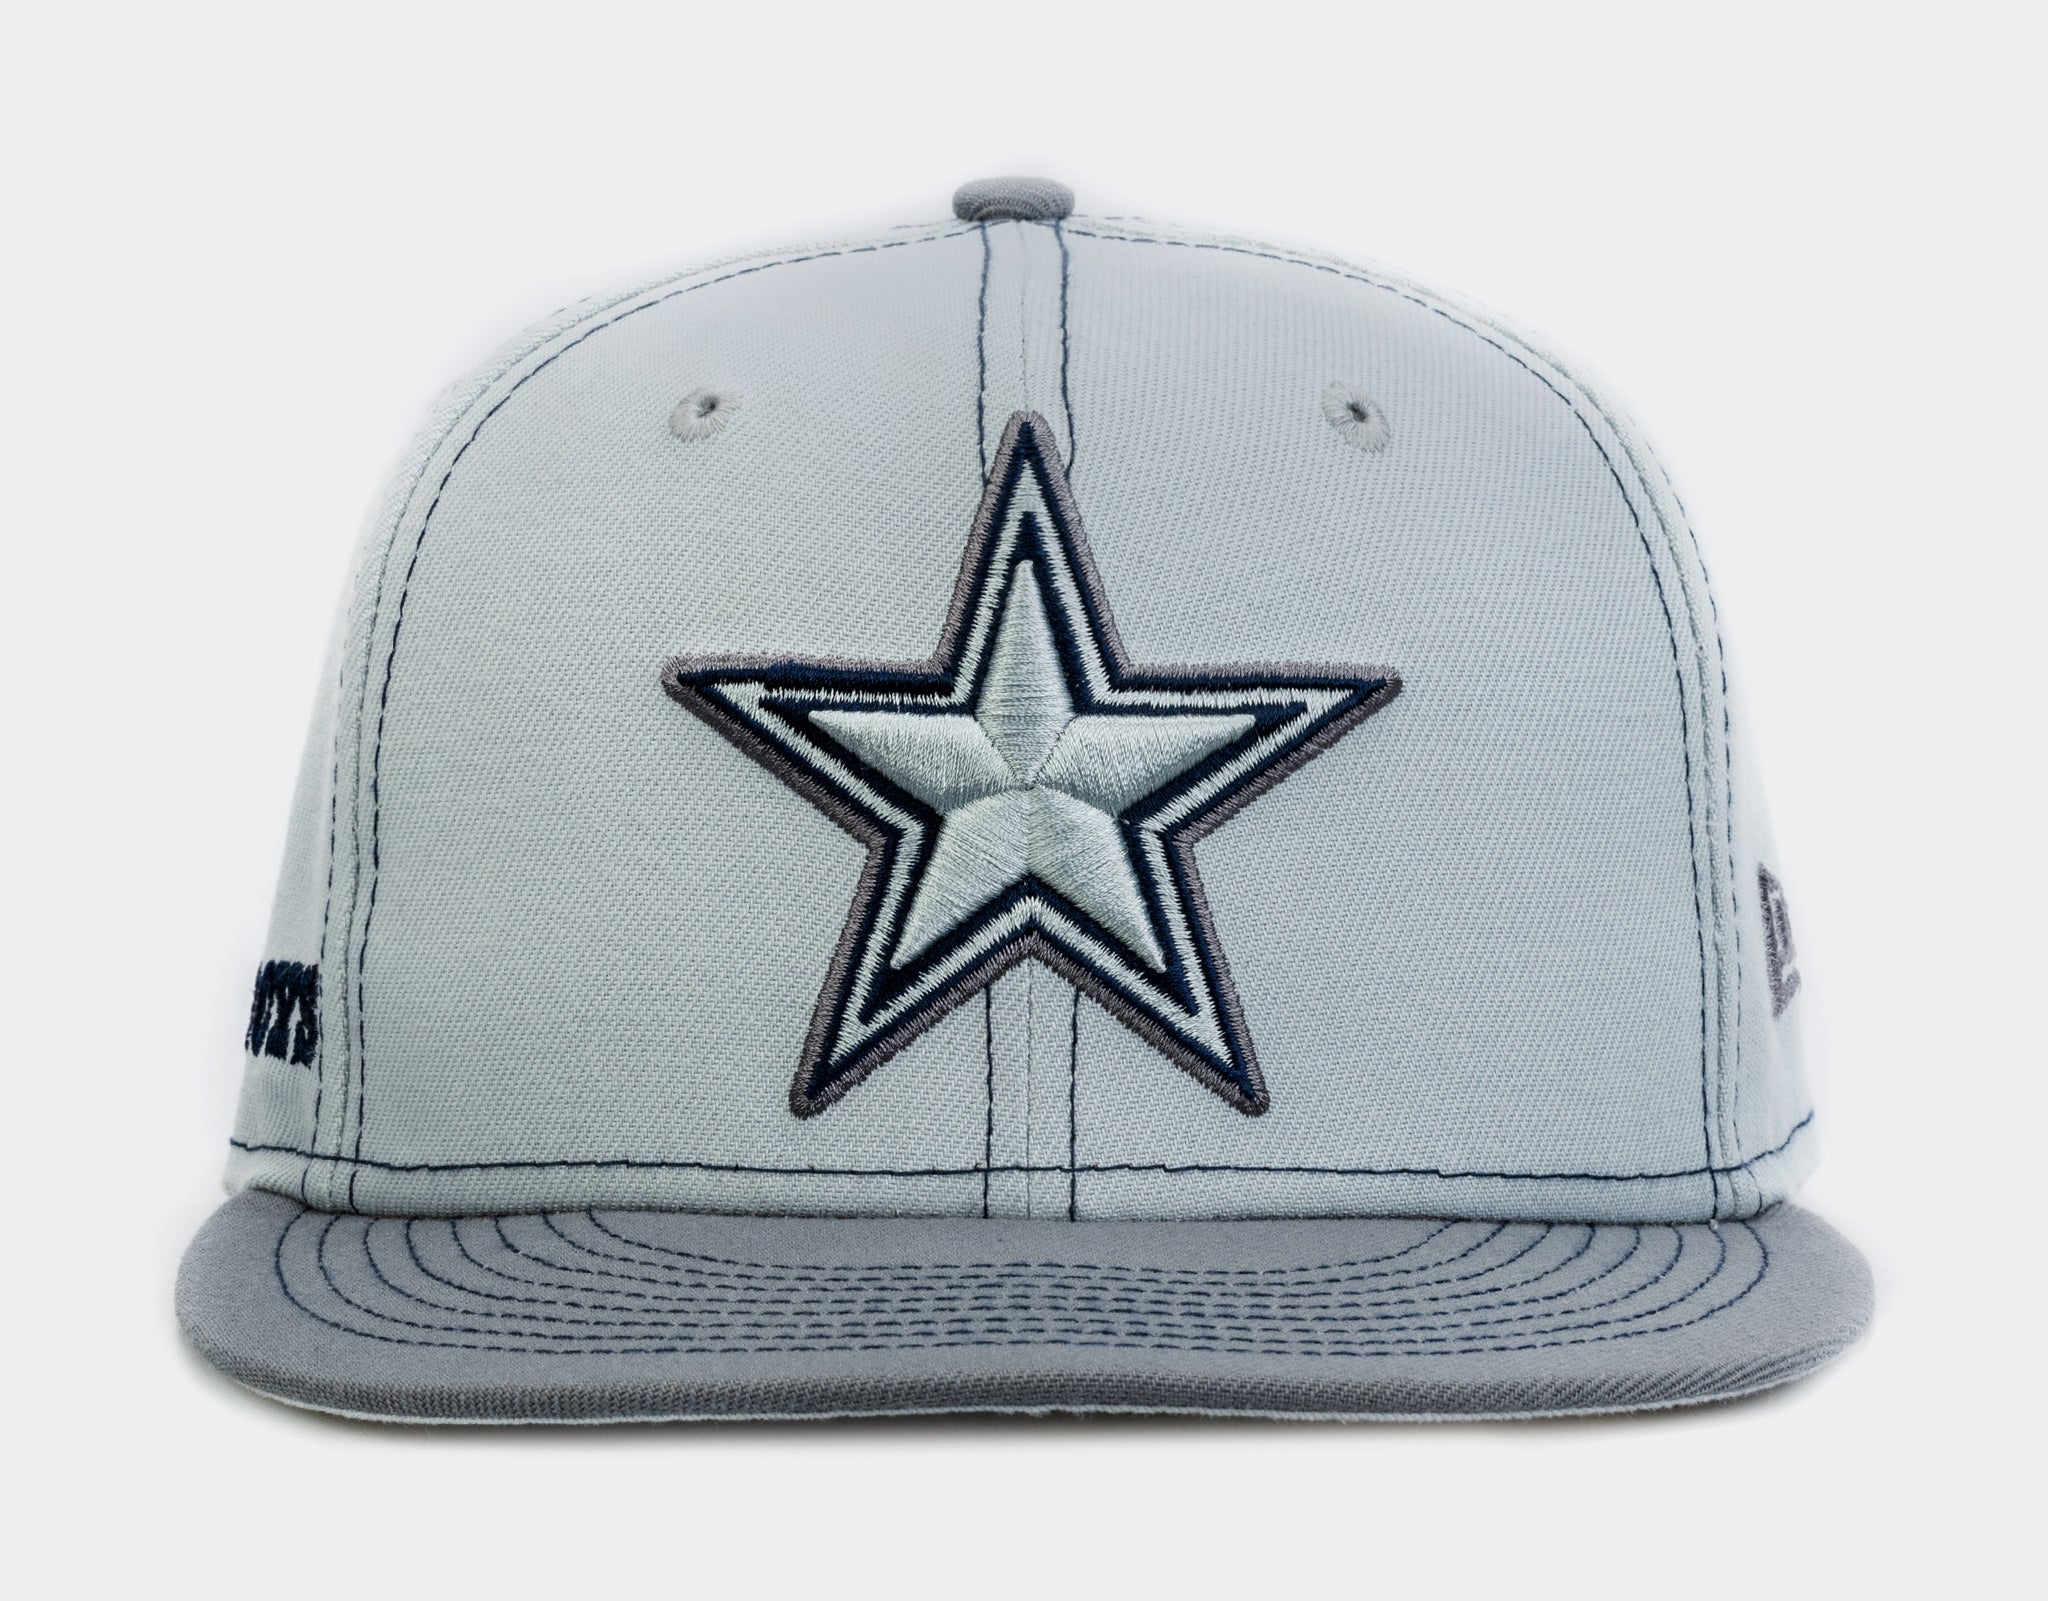 new era hats cowboys